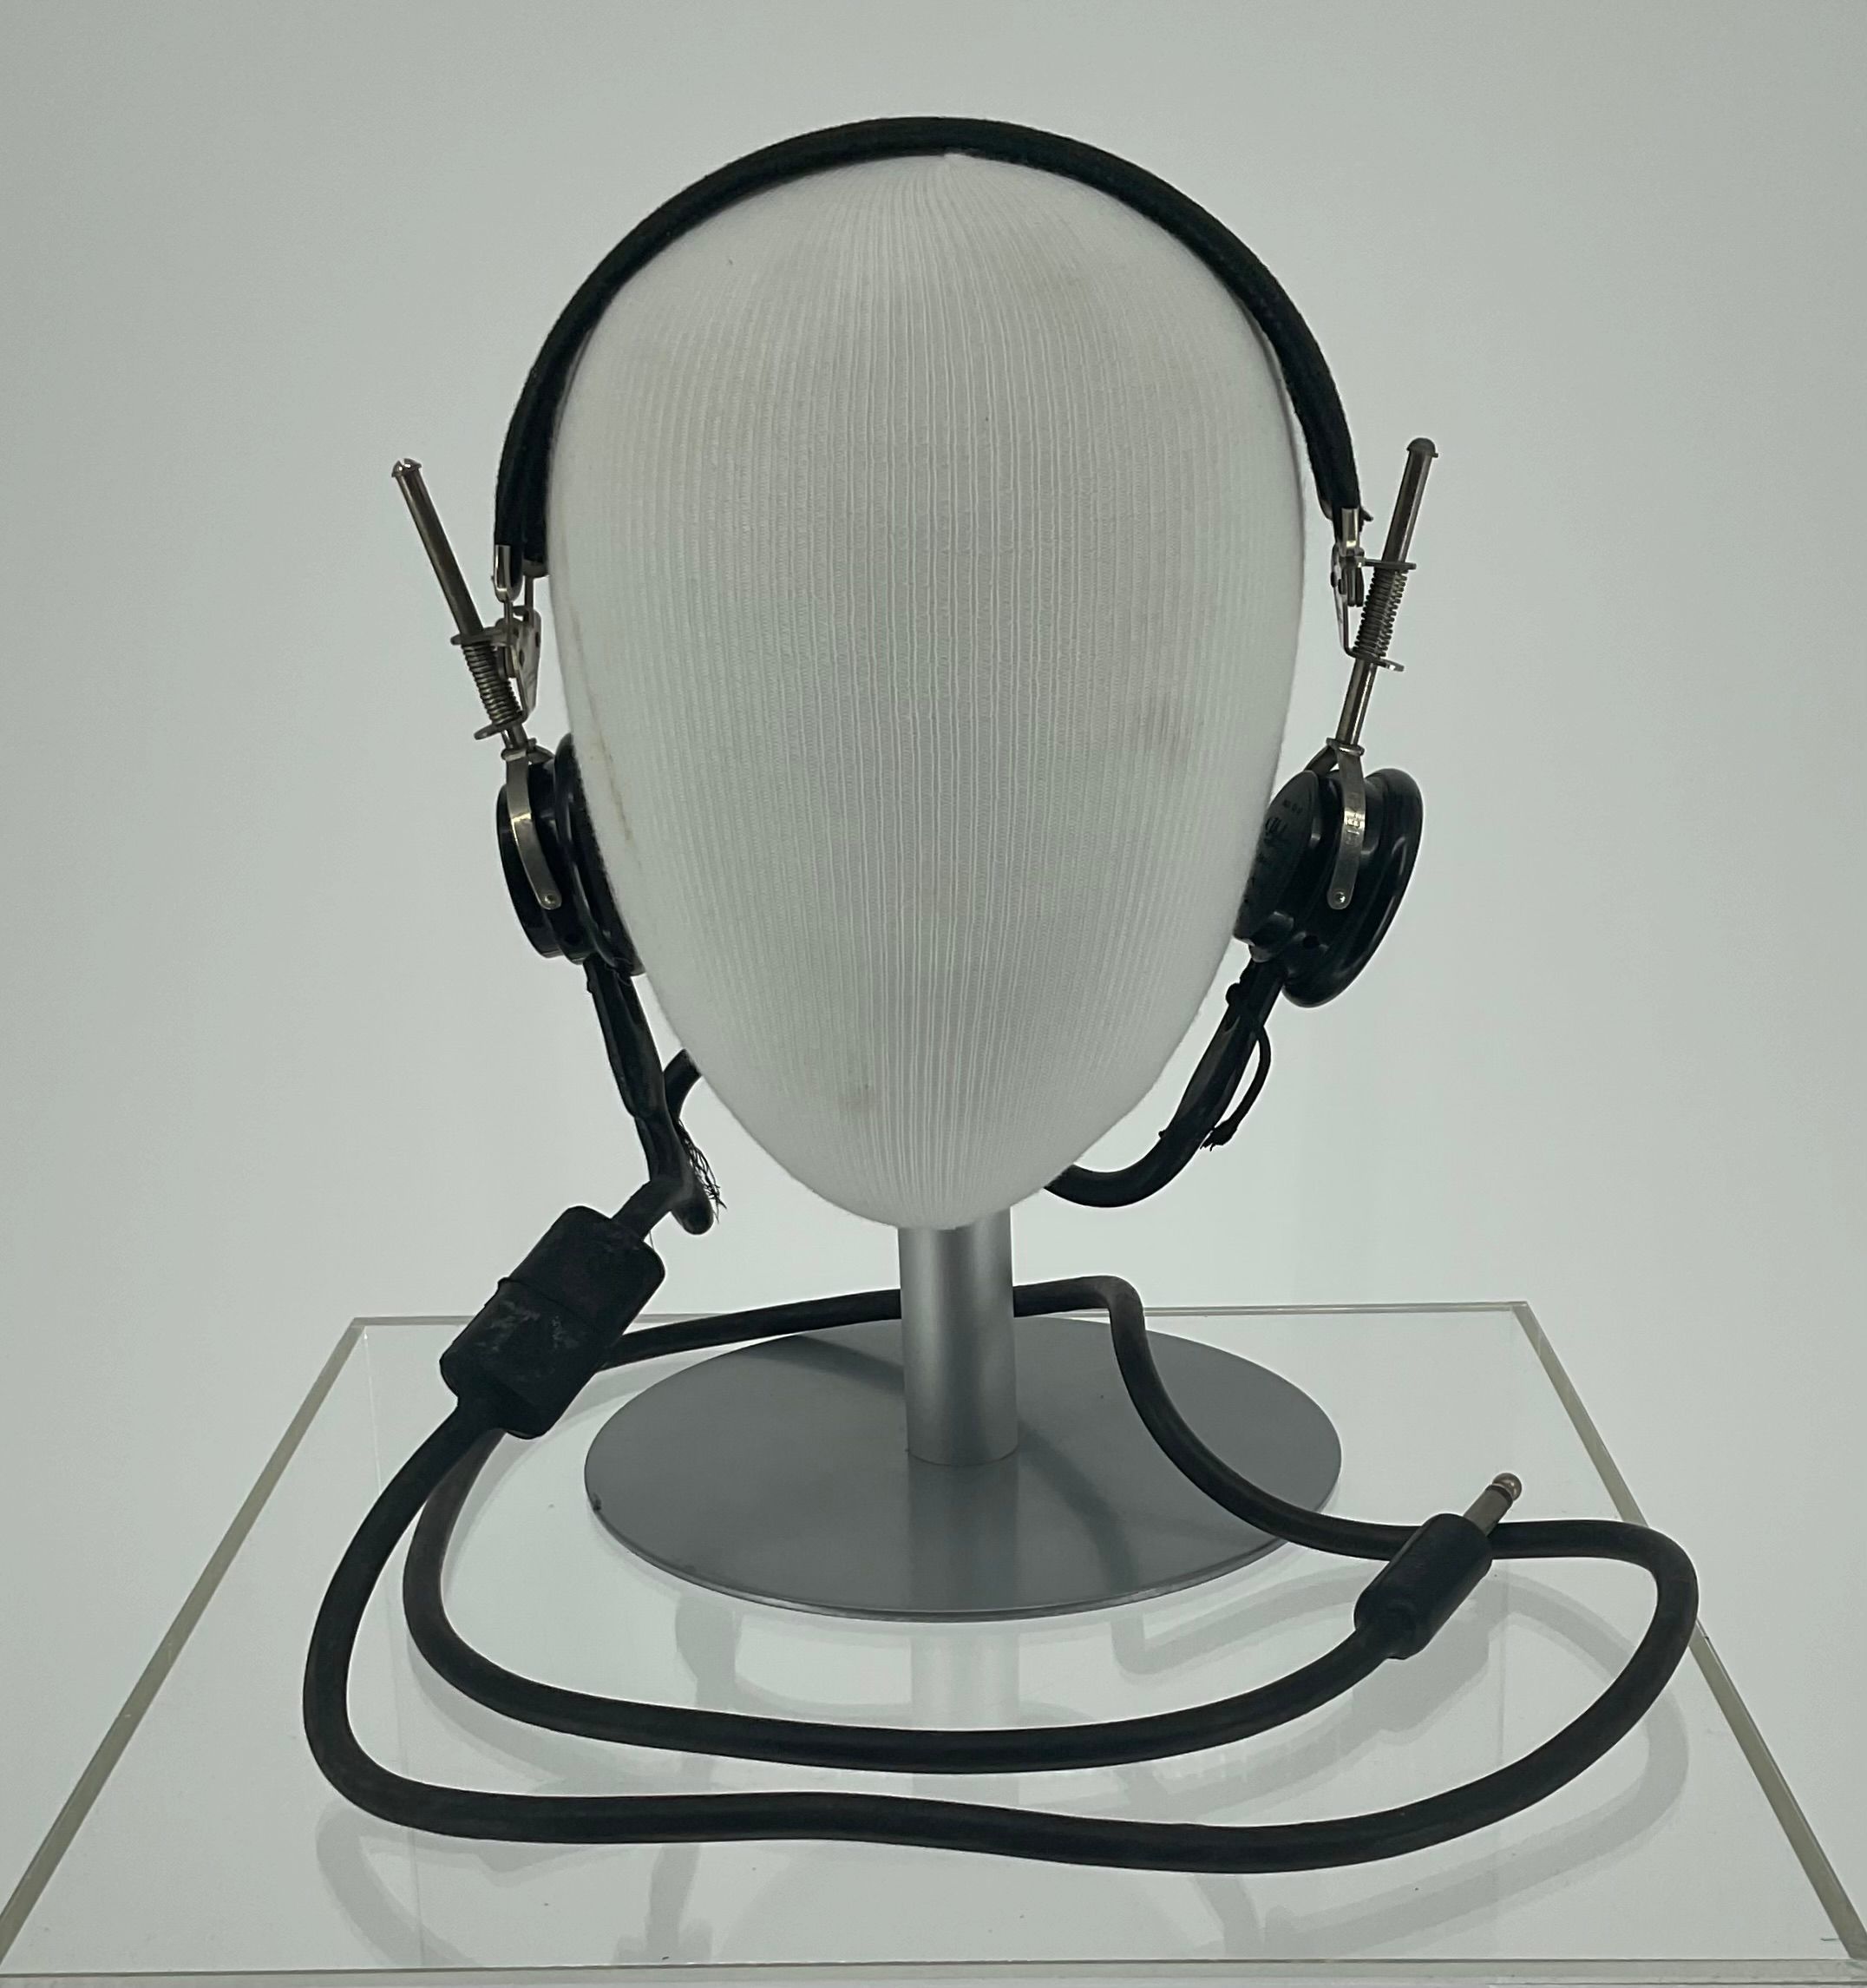 Primary Image of Telephonica Radio Headset